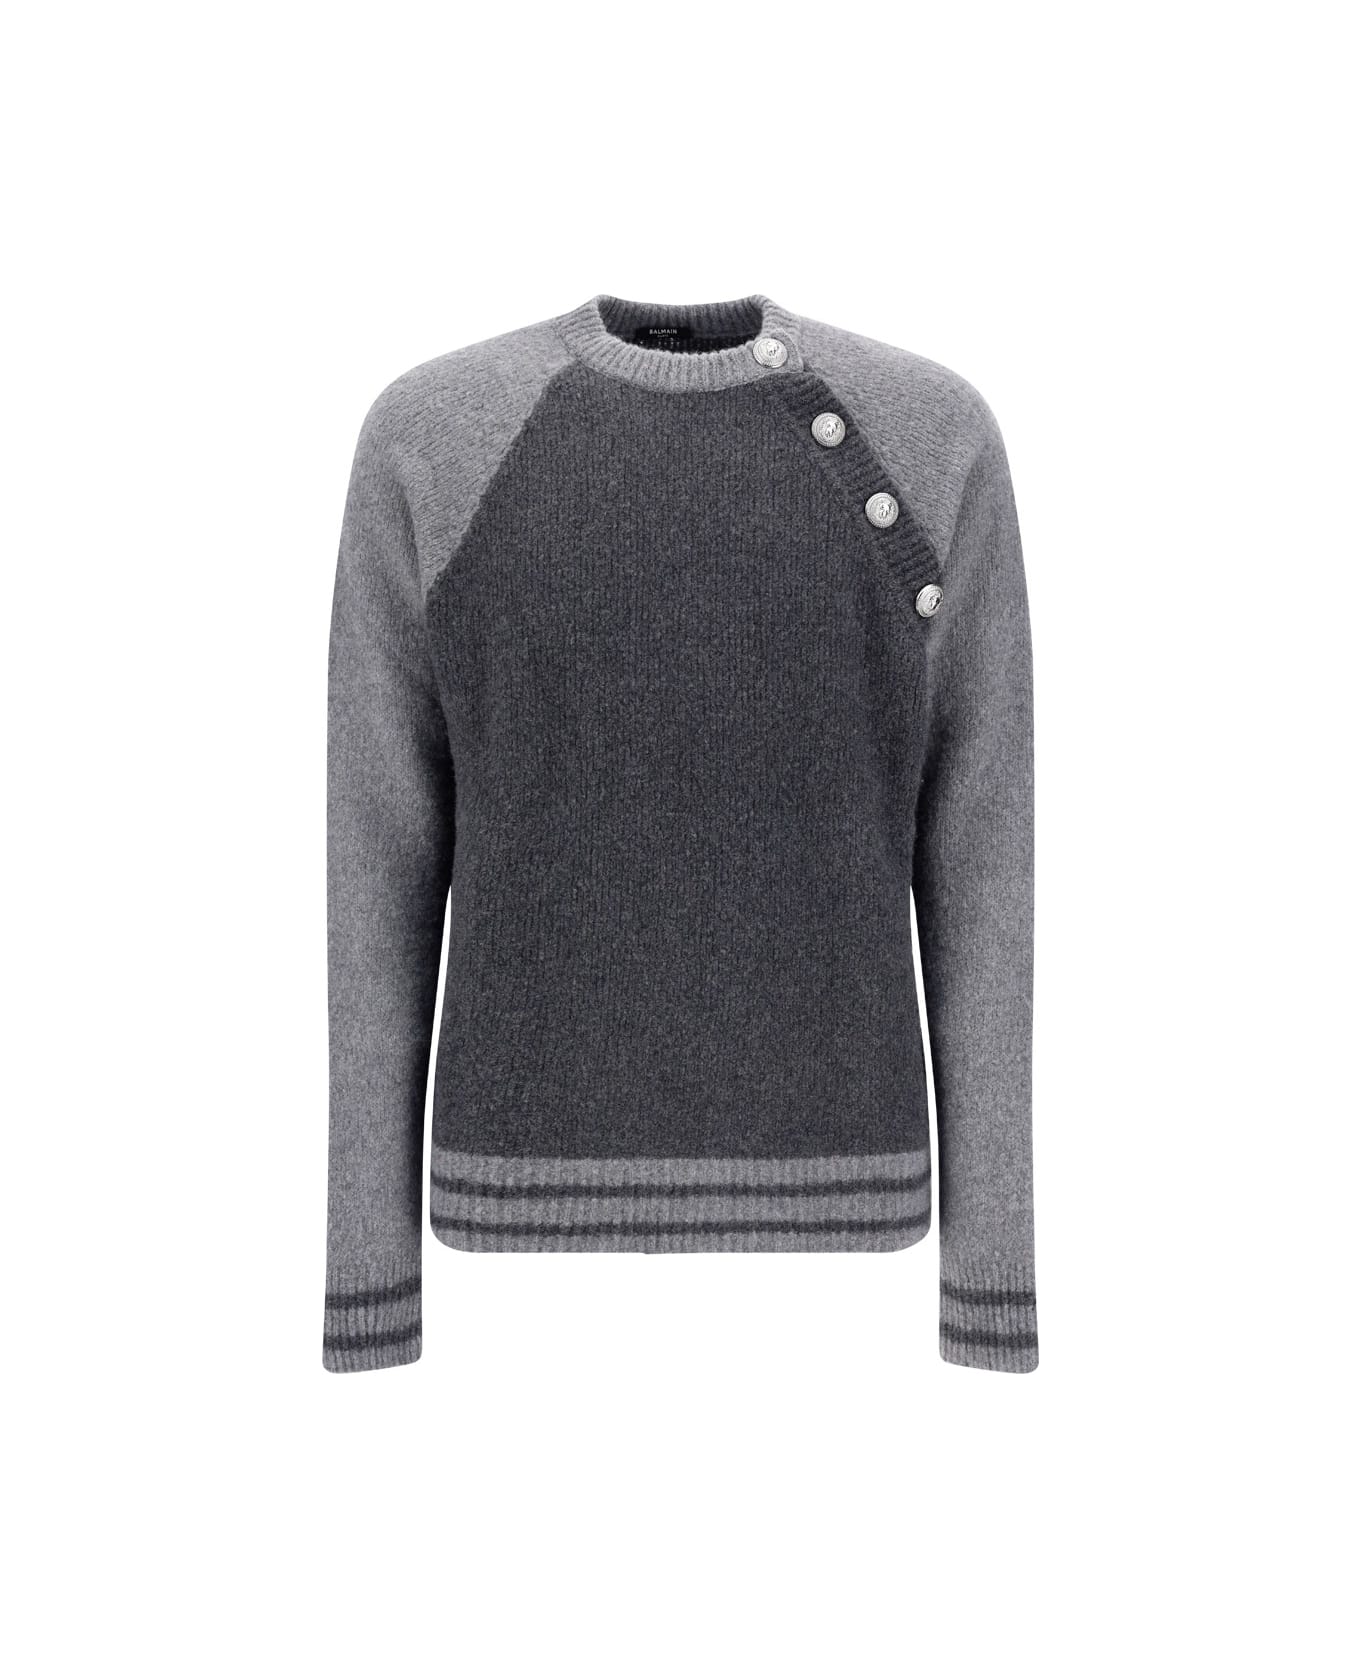 Balmain Sweater - Gris Anthracite/gris Fonce